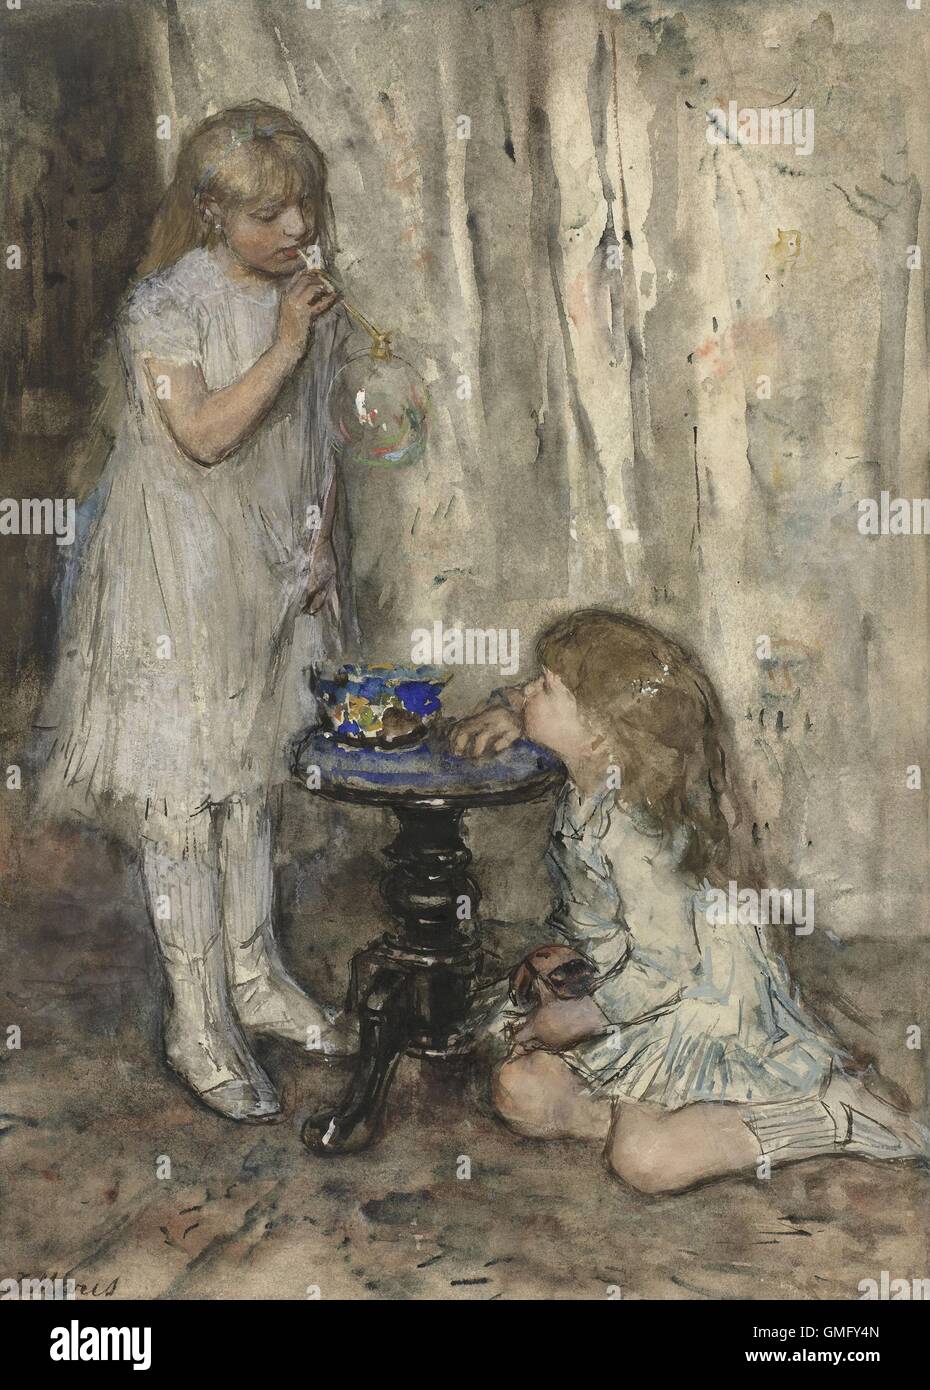 Zwei Mädchen bläst Seifenblasen, Jacob Maris, ca. 1880, niederländische Aquarell malen. Zwei seiner Töchter, wahrscheinlich Tine und Stockfoto